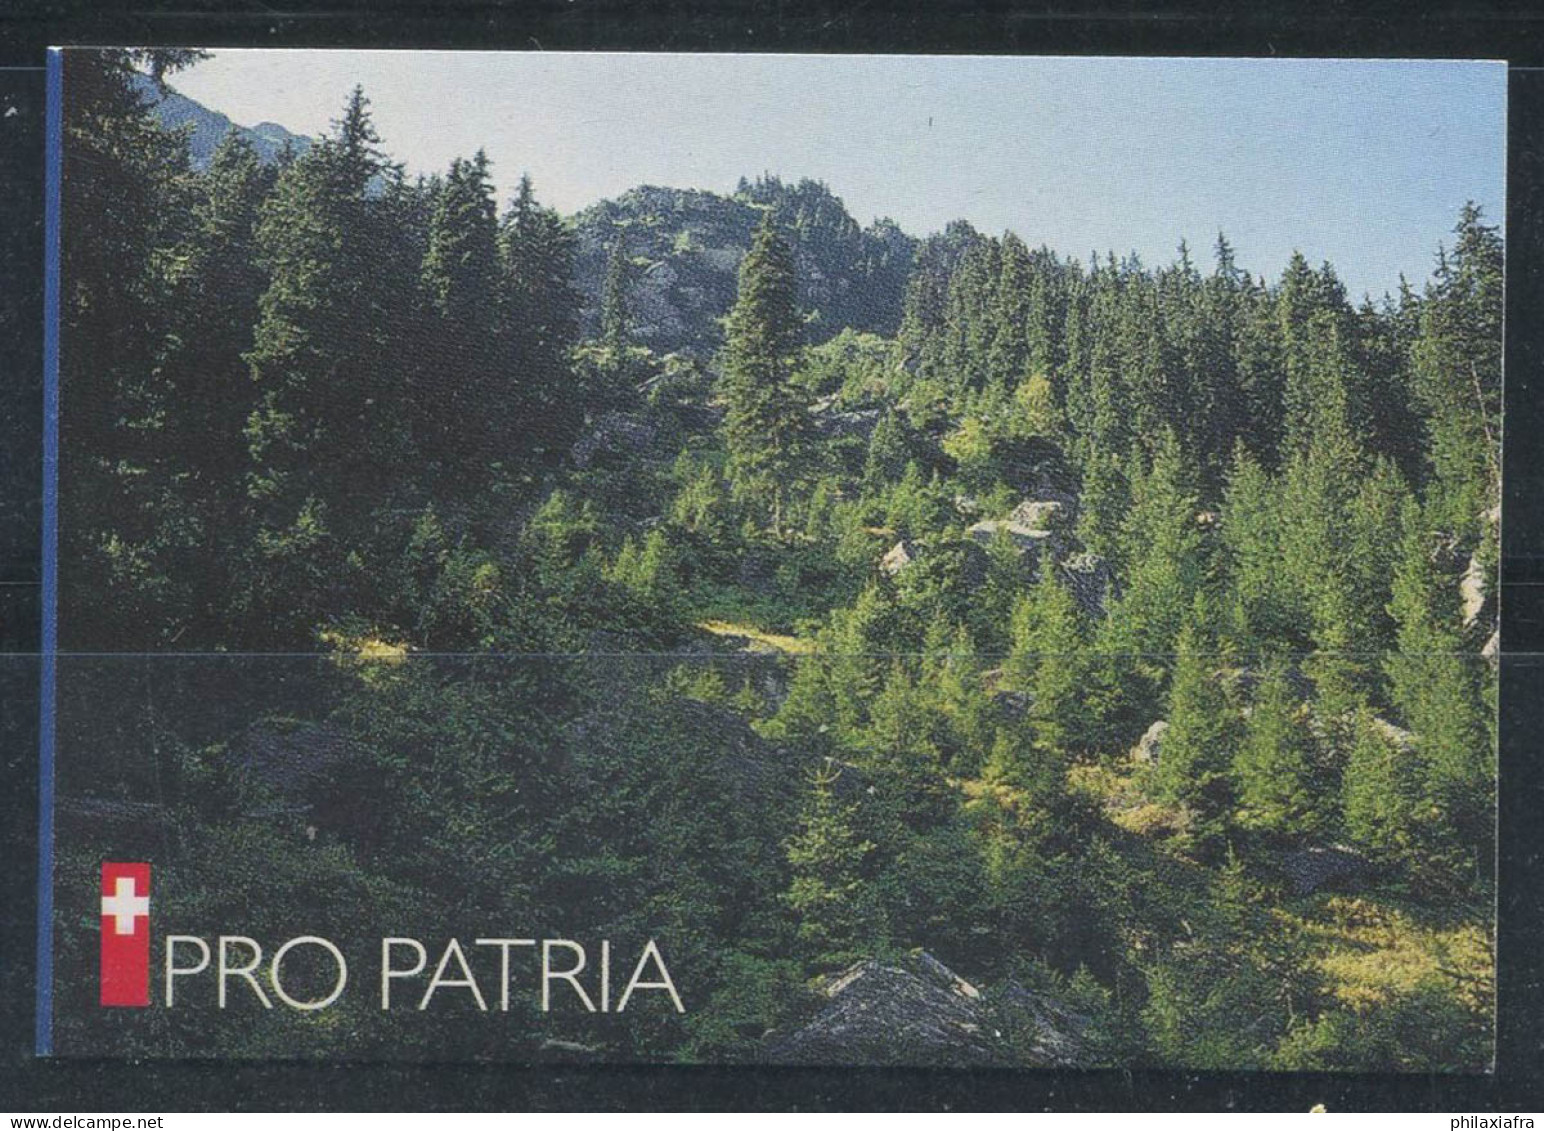 Suisse 1998 Mi. MH 0-110 Carnet 100% Pro Patria Oblitéré - Postzegelboekjes